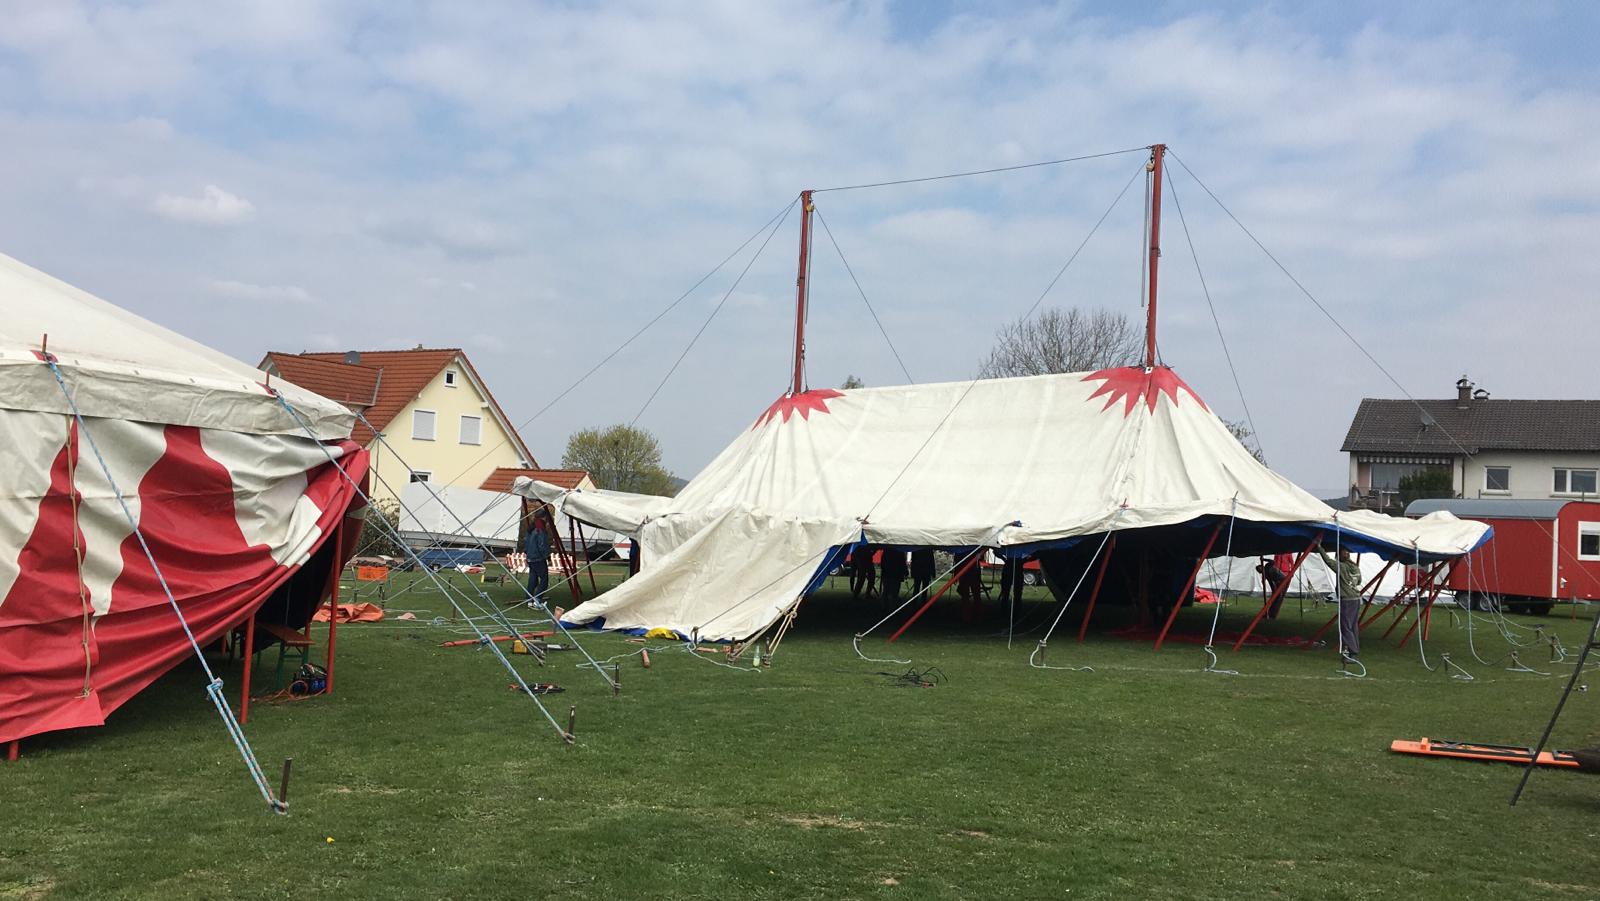 30te Saison des Circus Blamage in Mönchberg gestartet